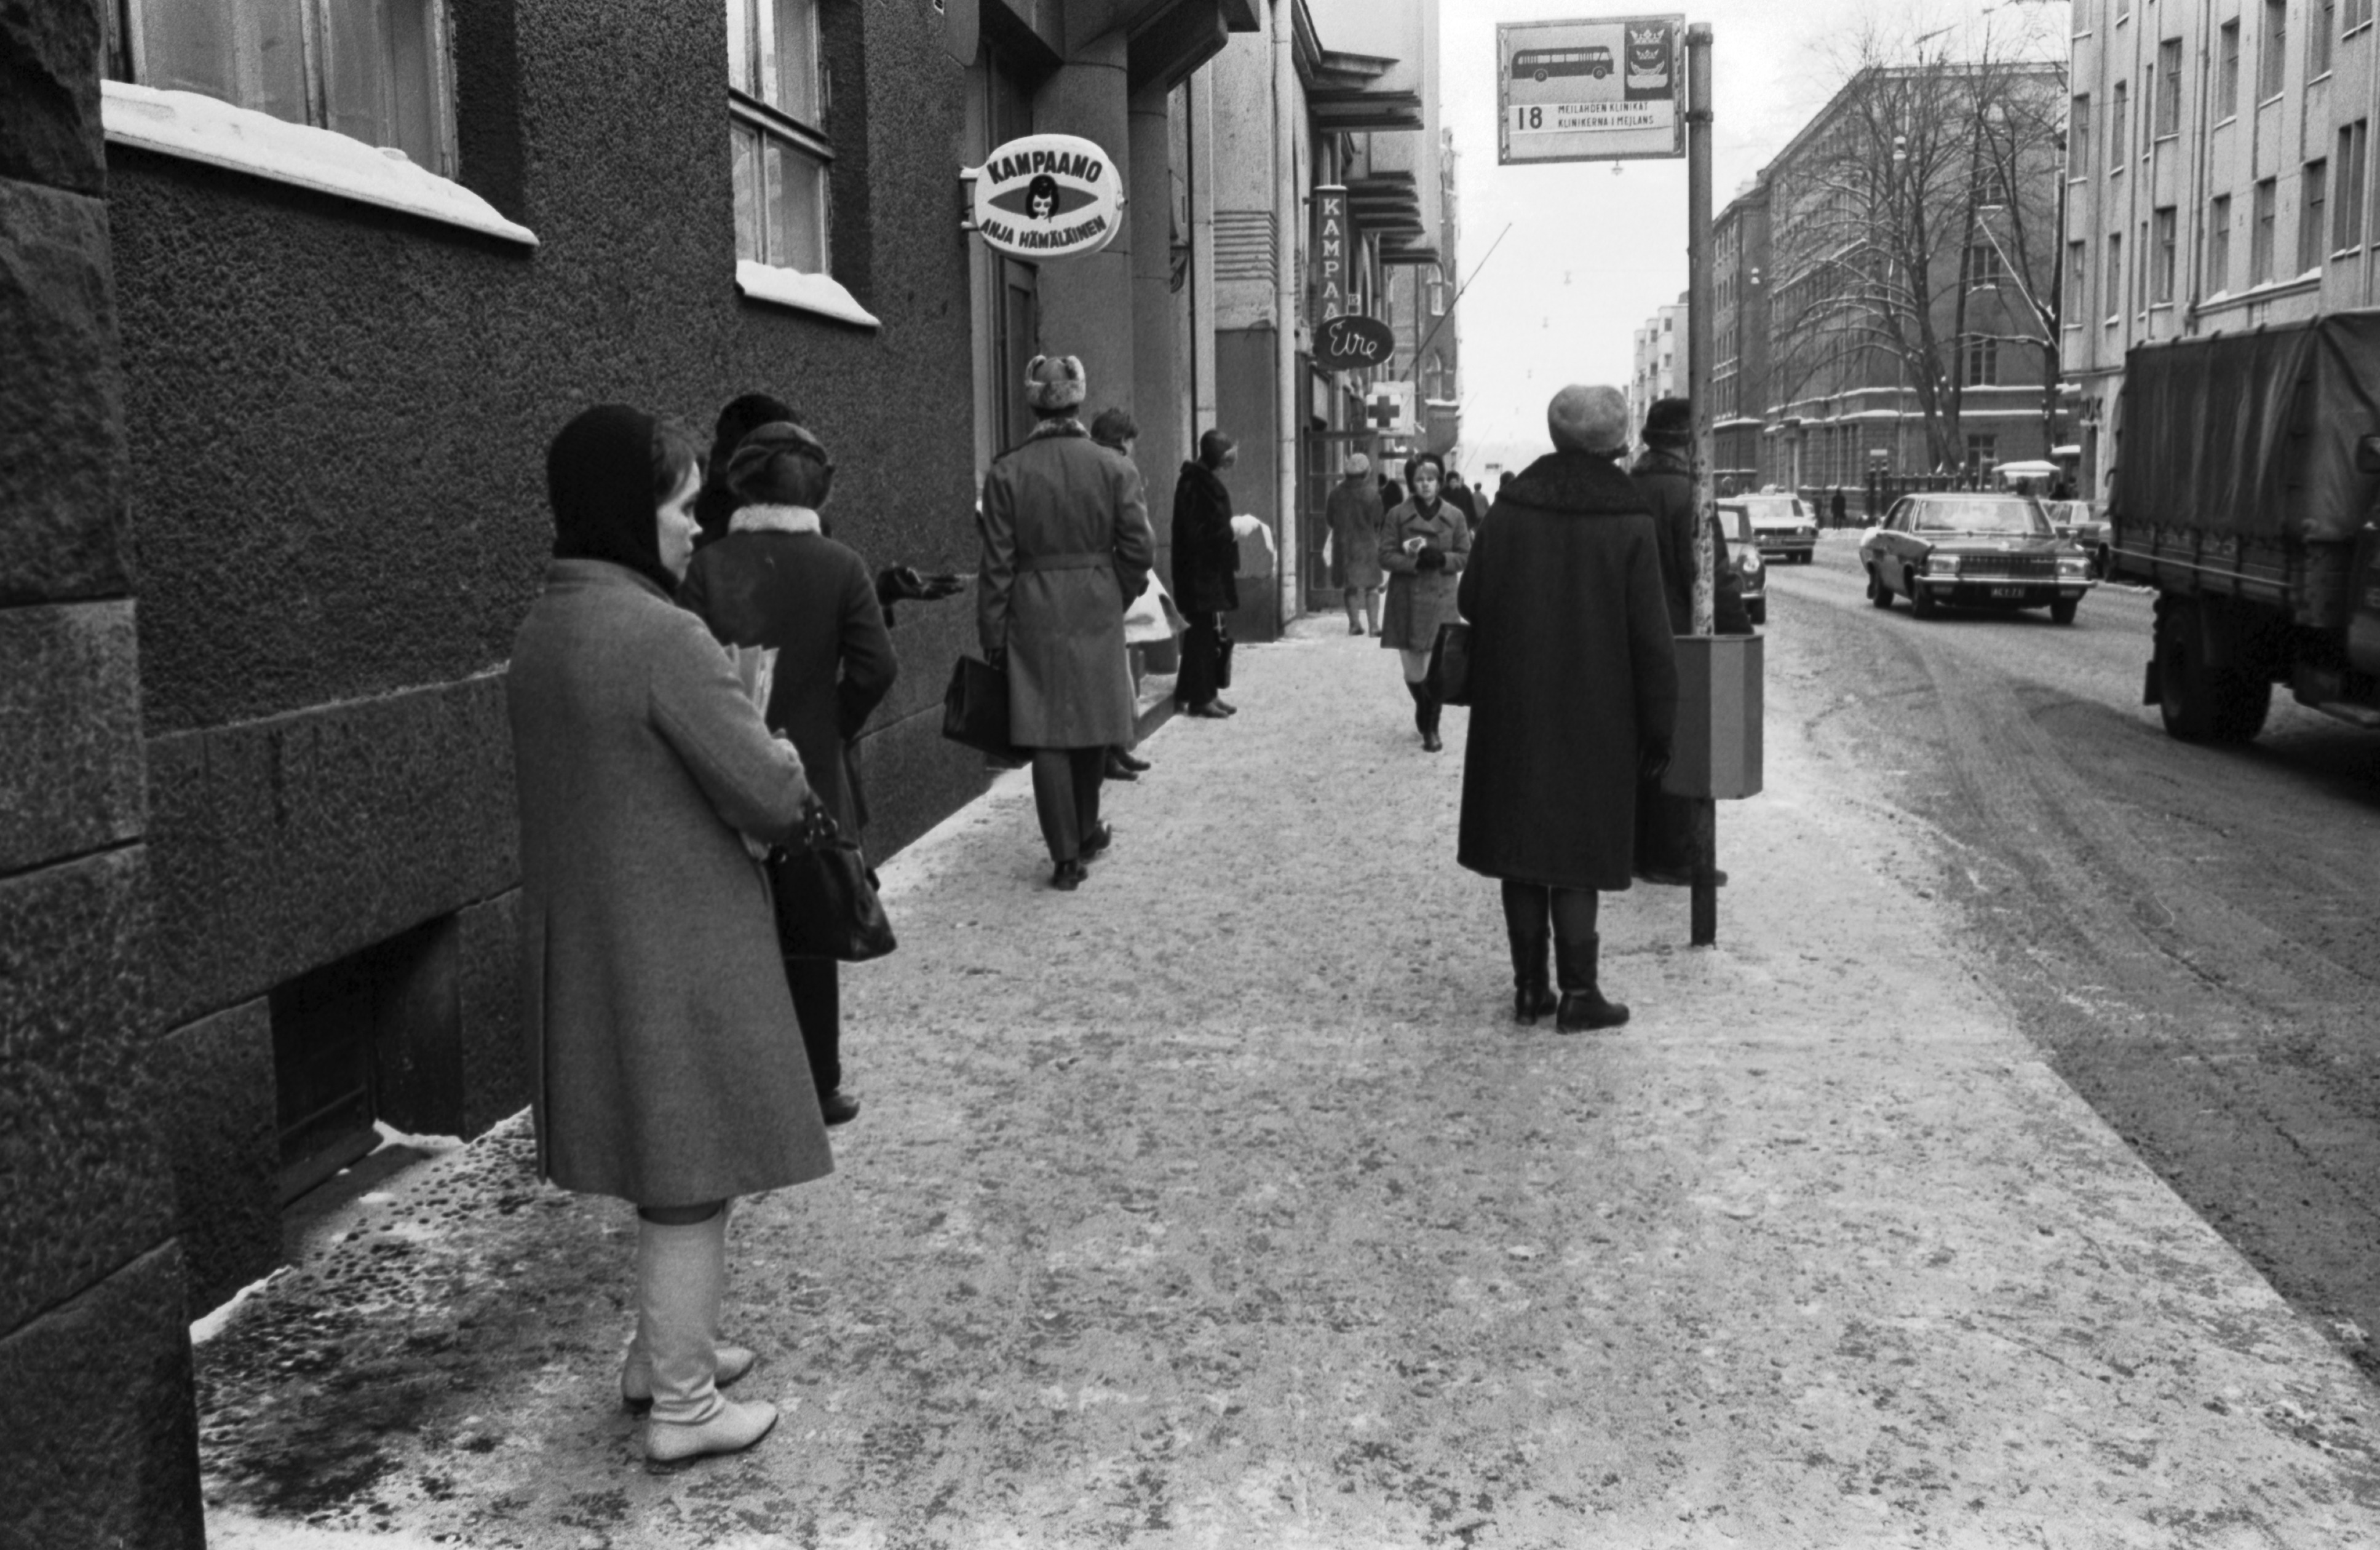 Ihmisiä bussi numero 18:n pysäkillä Liisankadulla. Talvi, lunta maassa. Taustalla näkyy Kampaamo Anja Hämäläisen kyltti.